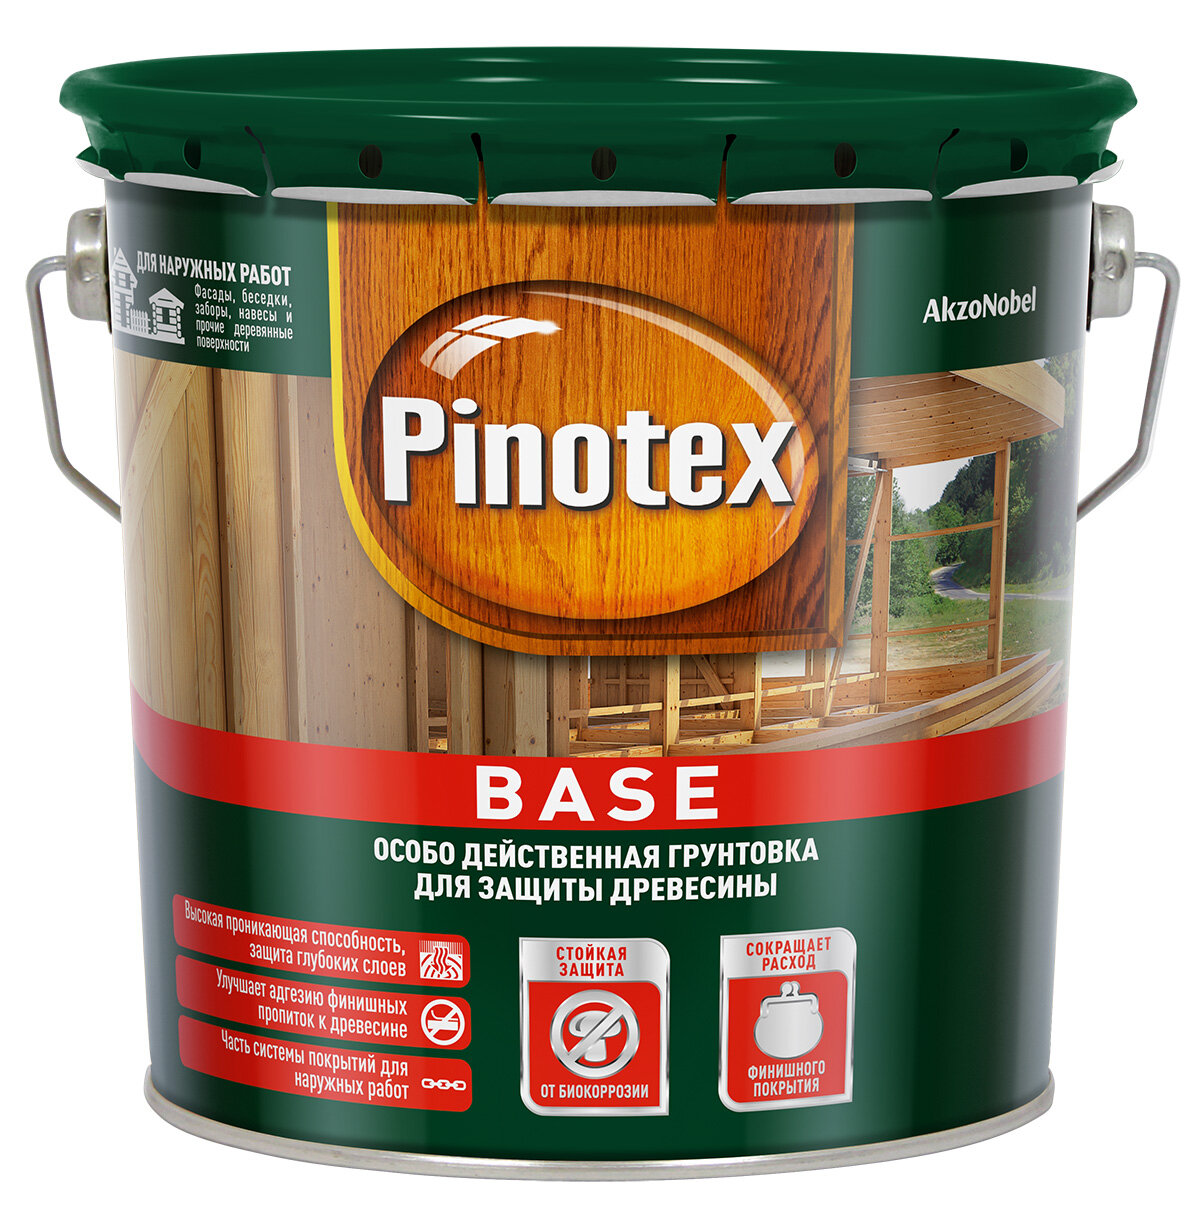 PINOTEX BASE грунт антисетик для защиты древесины от плесени и синевы для наружных работ (2,5л)